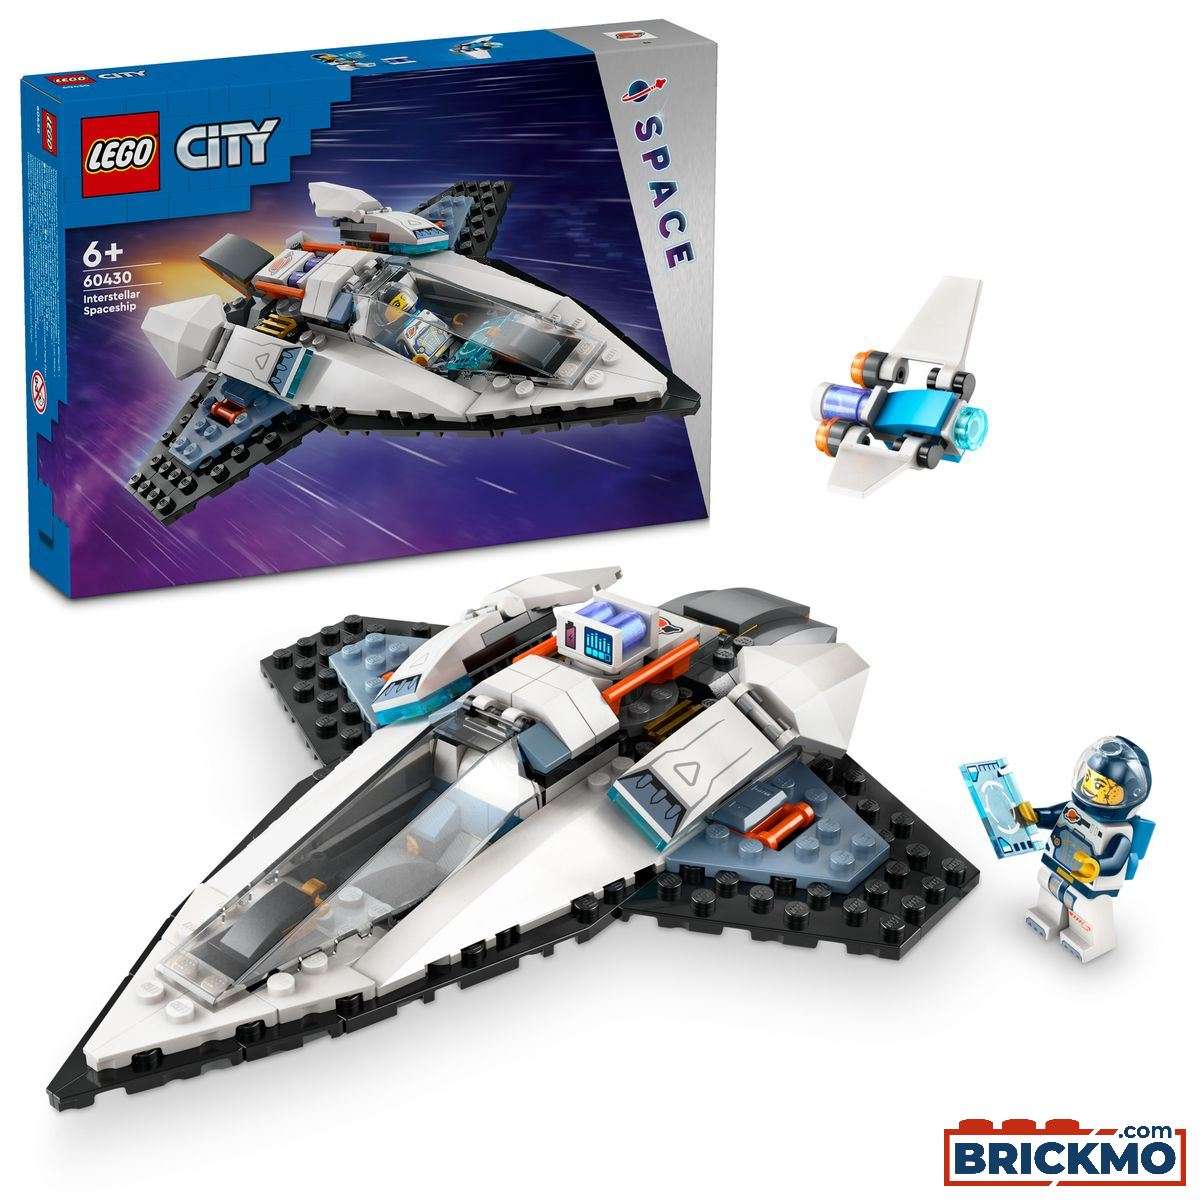 LEGO City 60430 Csillagközi űrhajó 60430